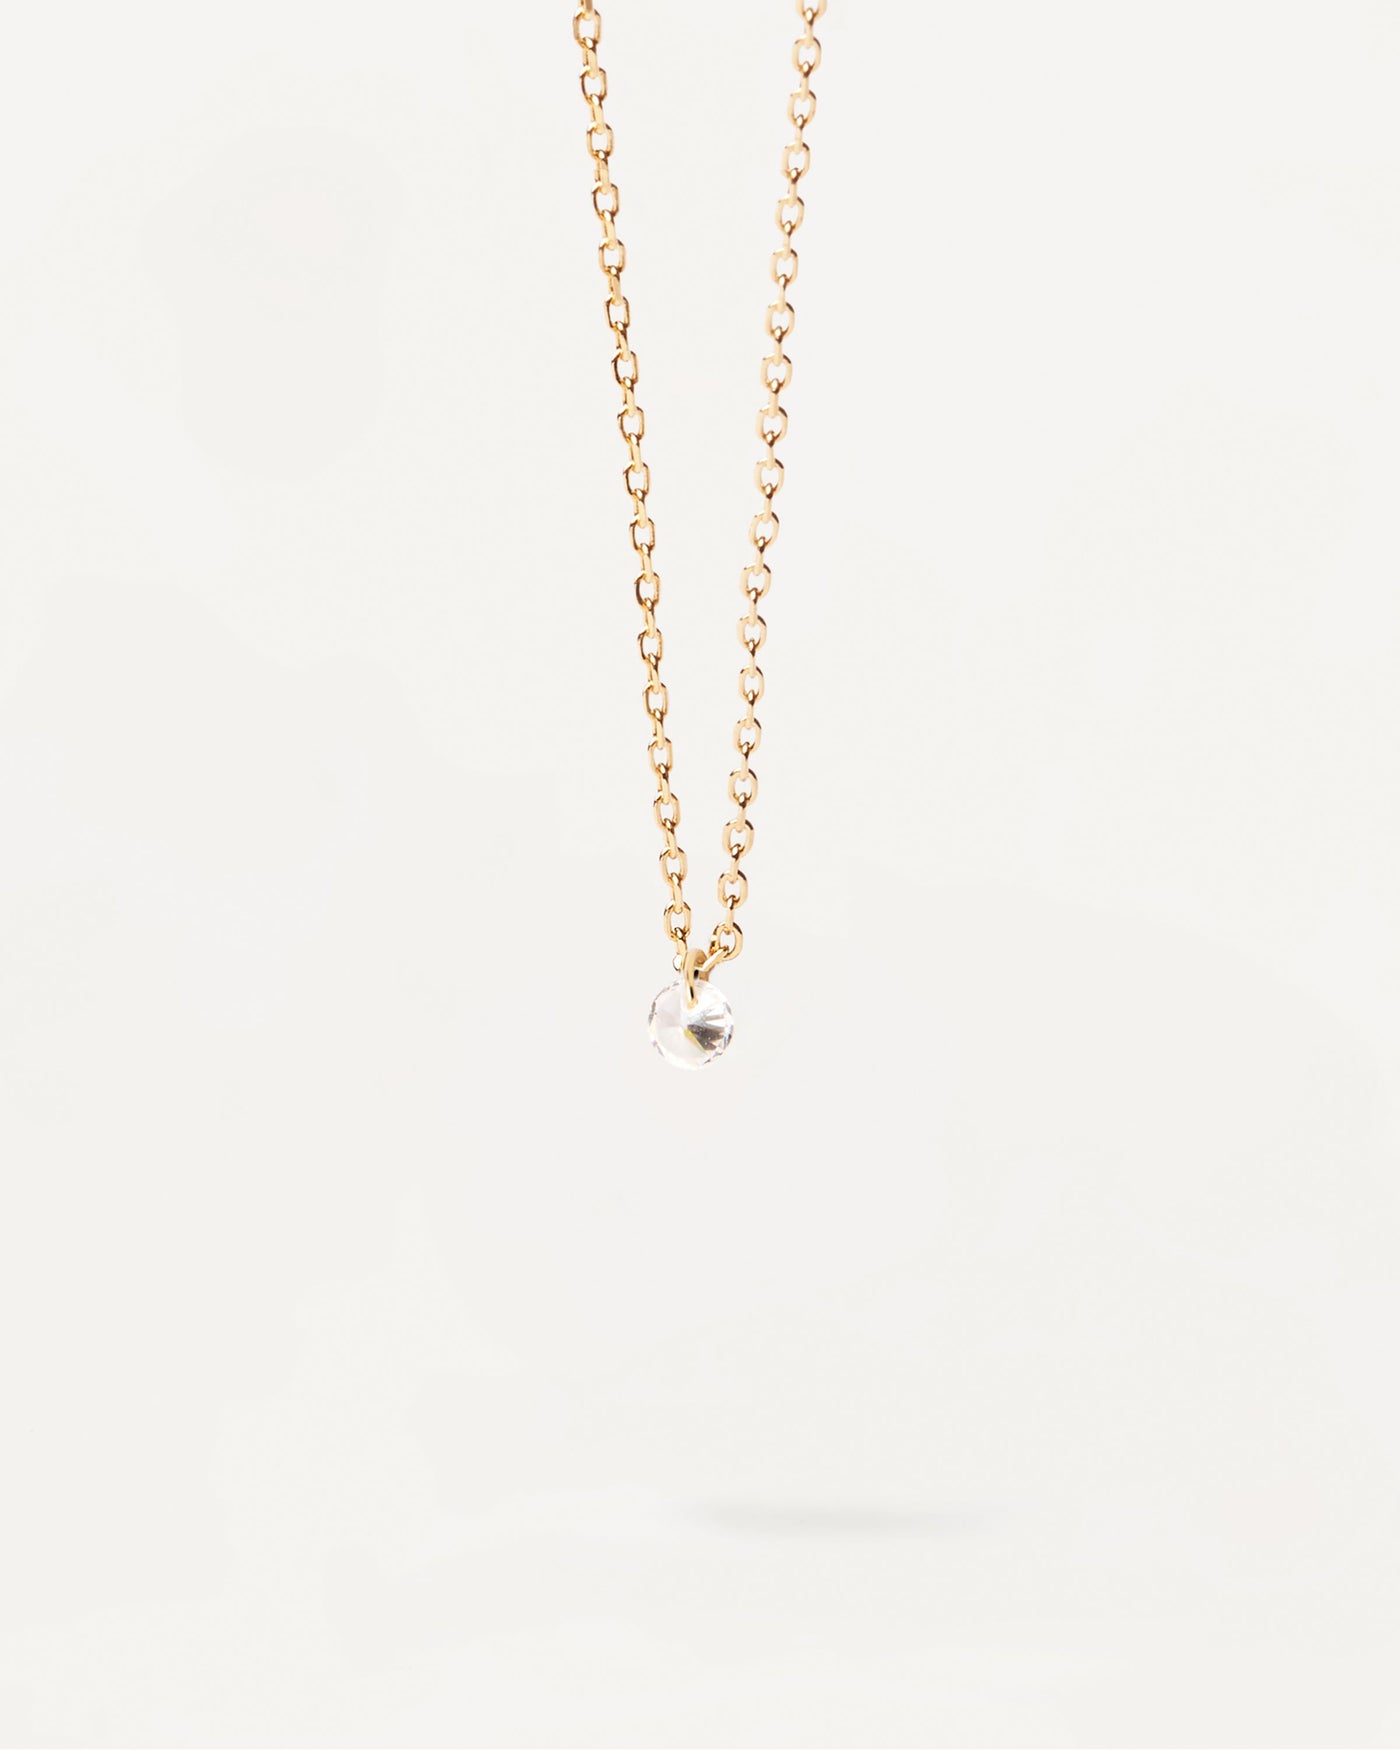 Joy Solitär-Halskette. Minimalistische Halskette aus vergoldetem Silber mit rundem Zirkonia-Anhänger. Erhalten Sie die neuesten Produkte von PDPAOLA. Geben Sie Ihre Bestellung sicher auf und erhalten Sie diesen Bestseller.